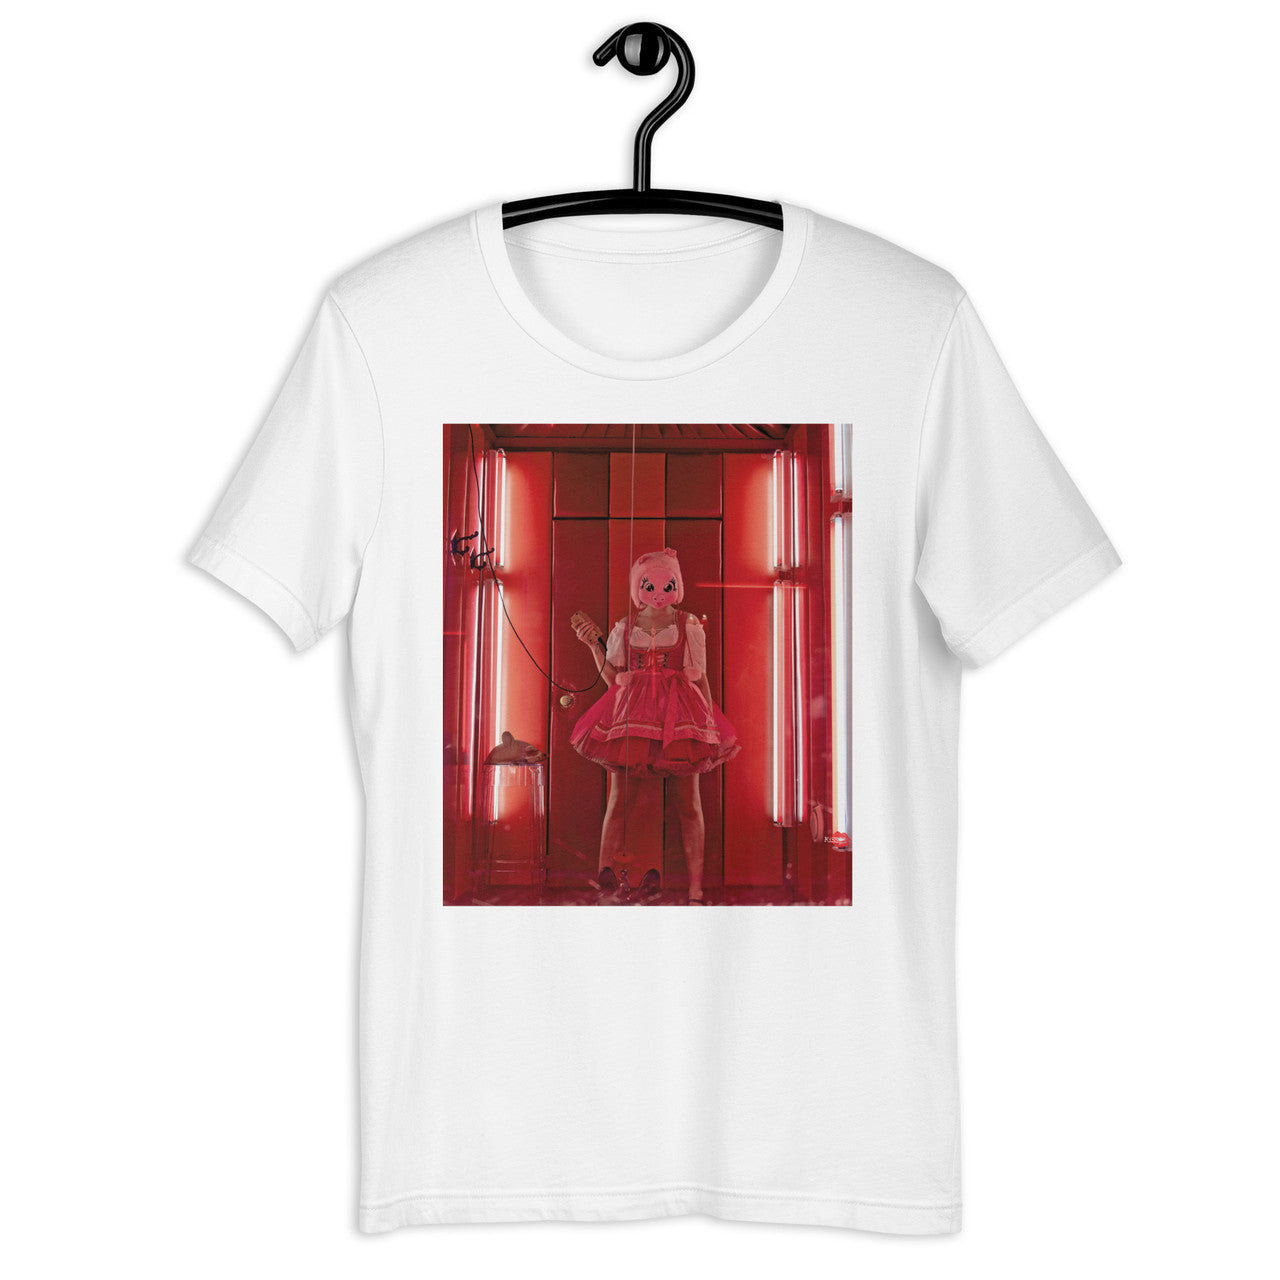 Villanelle Pig Red Light KiSS Unisex t-shirt - Jodie Comer assassin Amsterdam